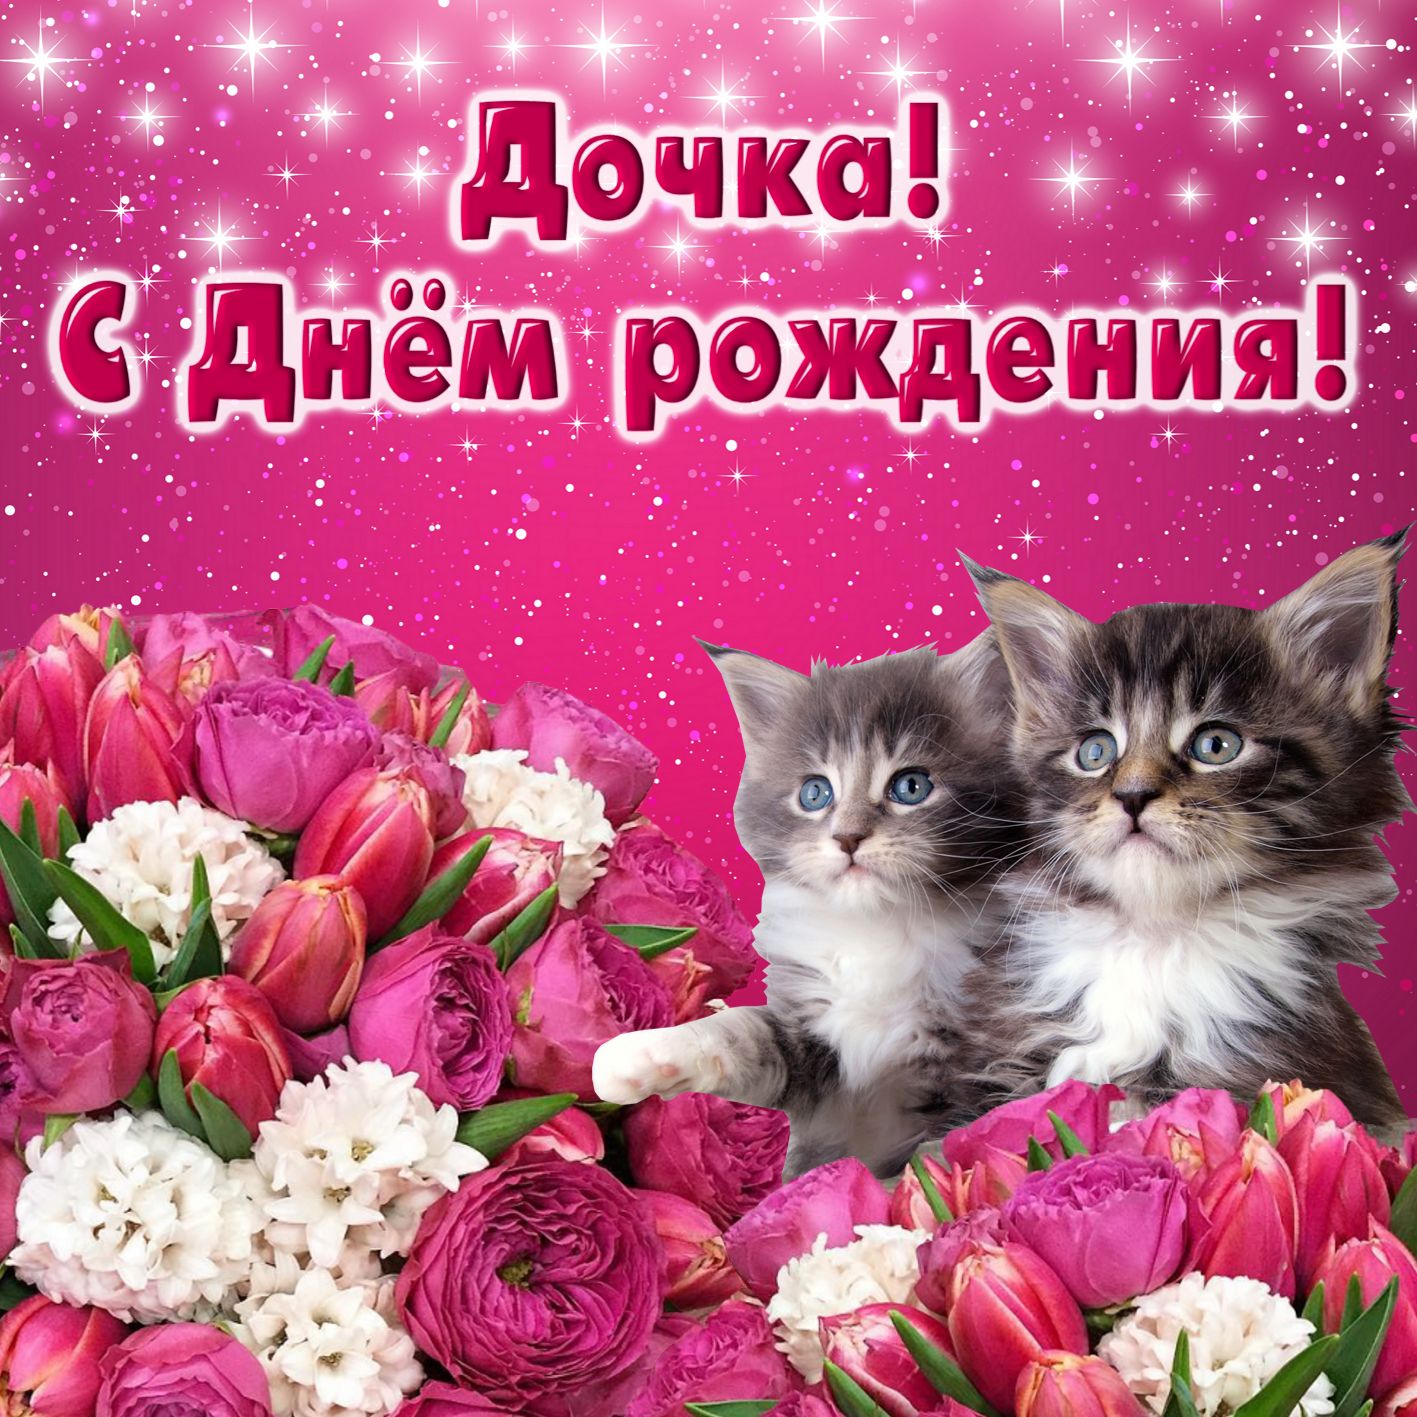 Открытка на День рождения дочери - забавные котята на сияющем фоне с цветами